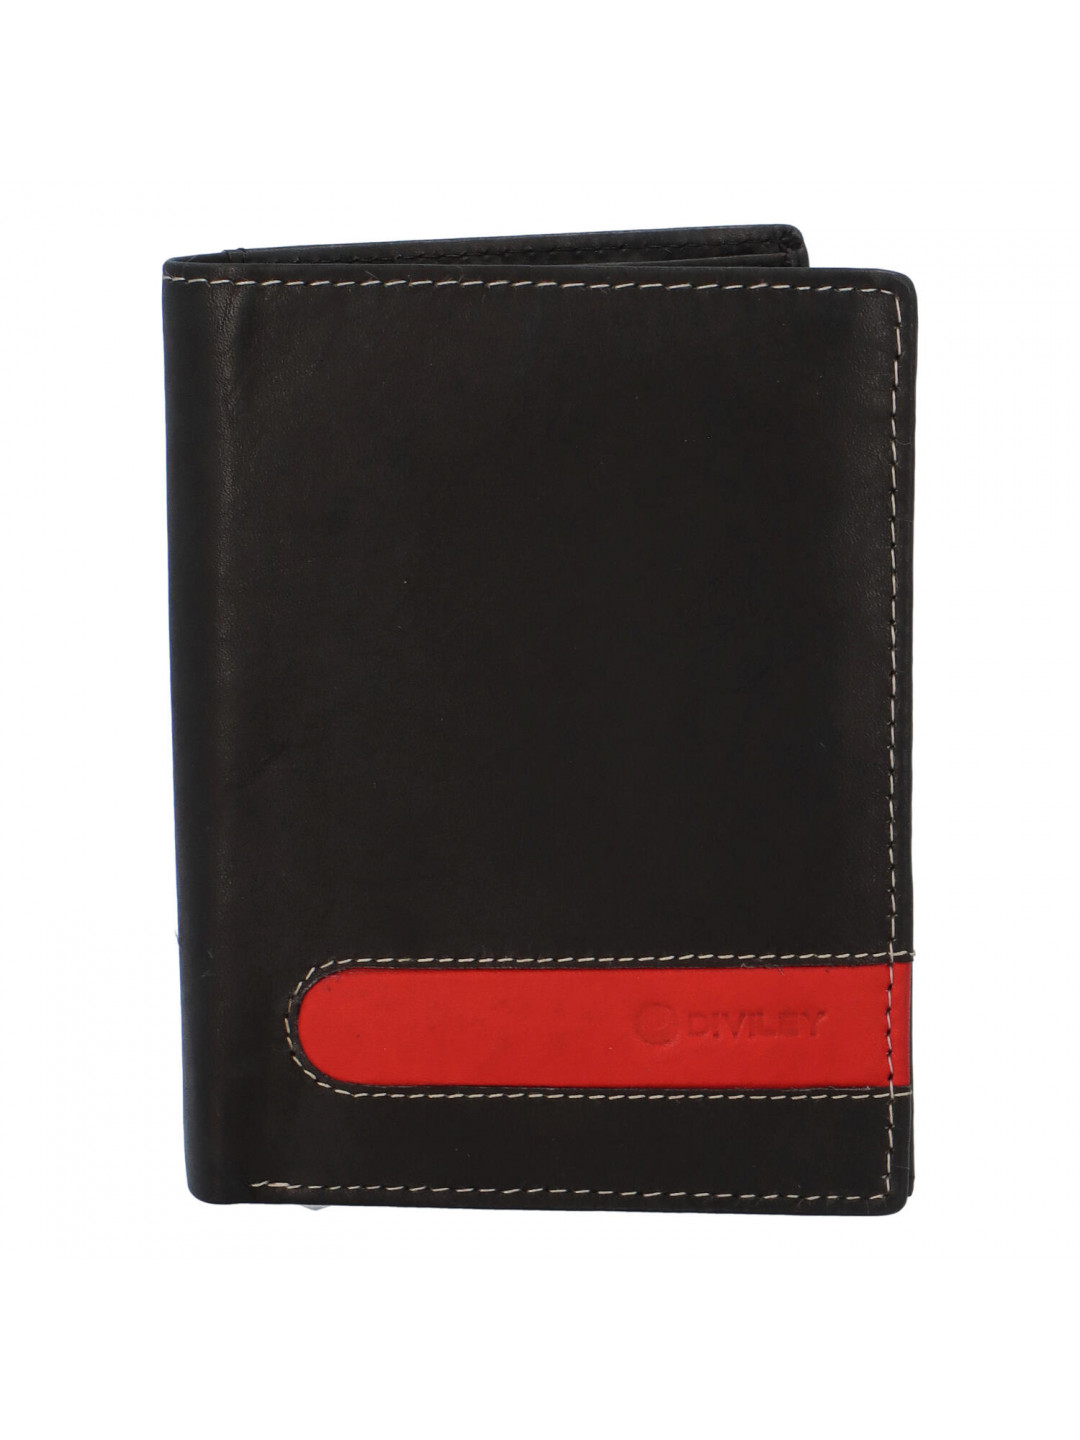 Pánská kožená peněženka černá – Diviley D1900